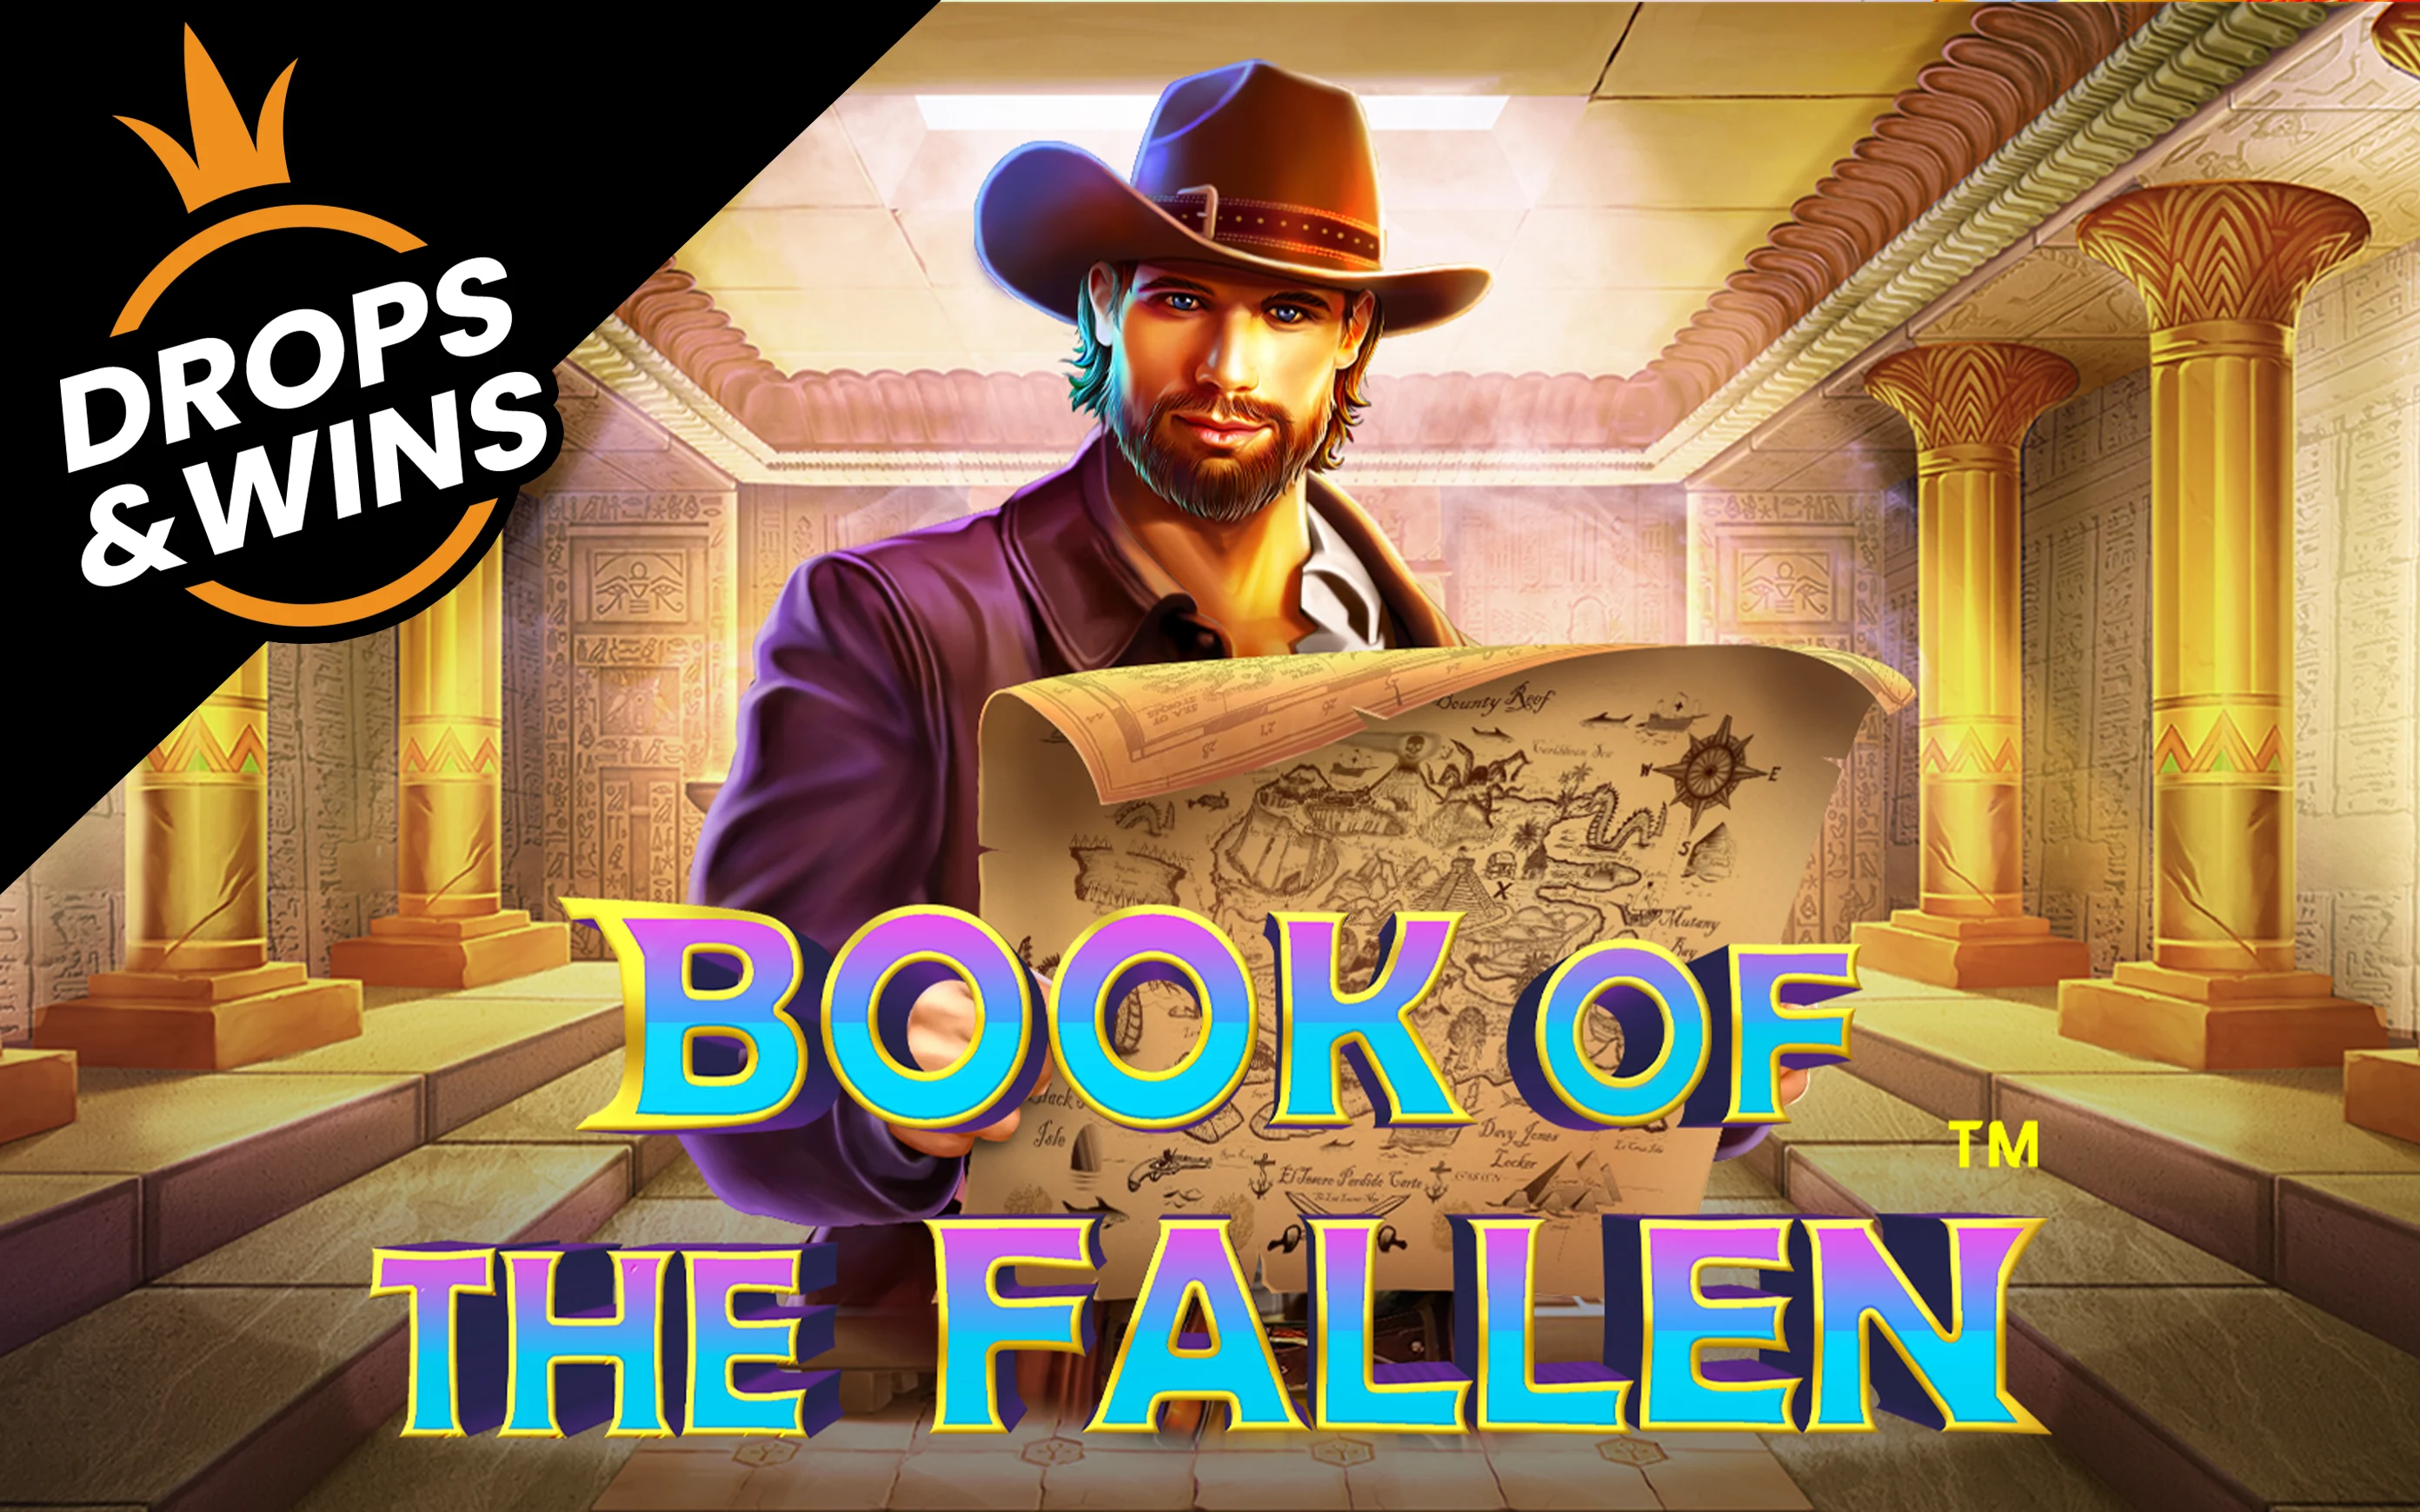 Juega a Book of The Fallen™ en el casino en línea de Starcasino.be